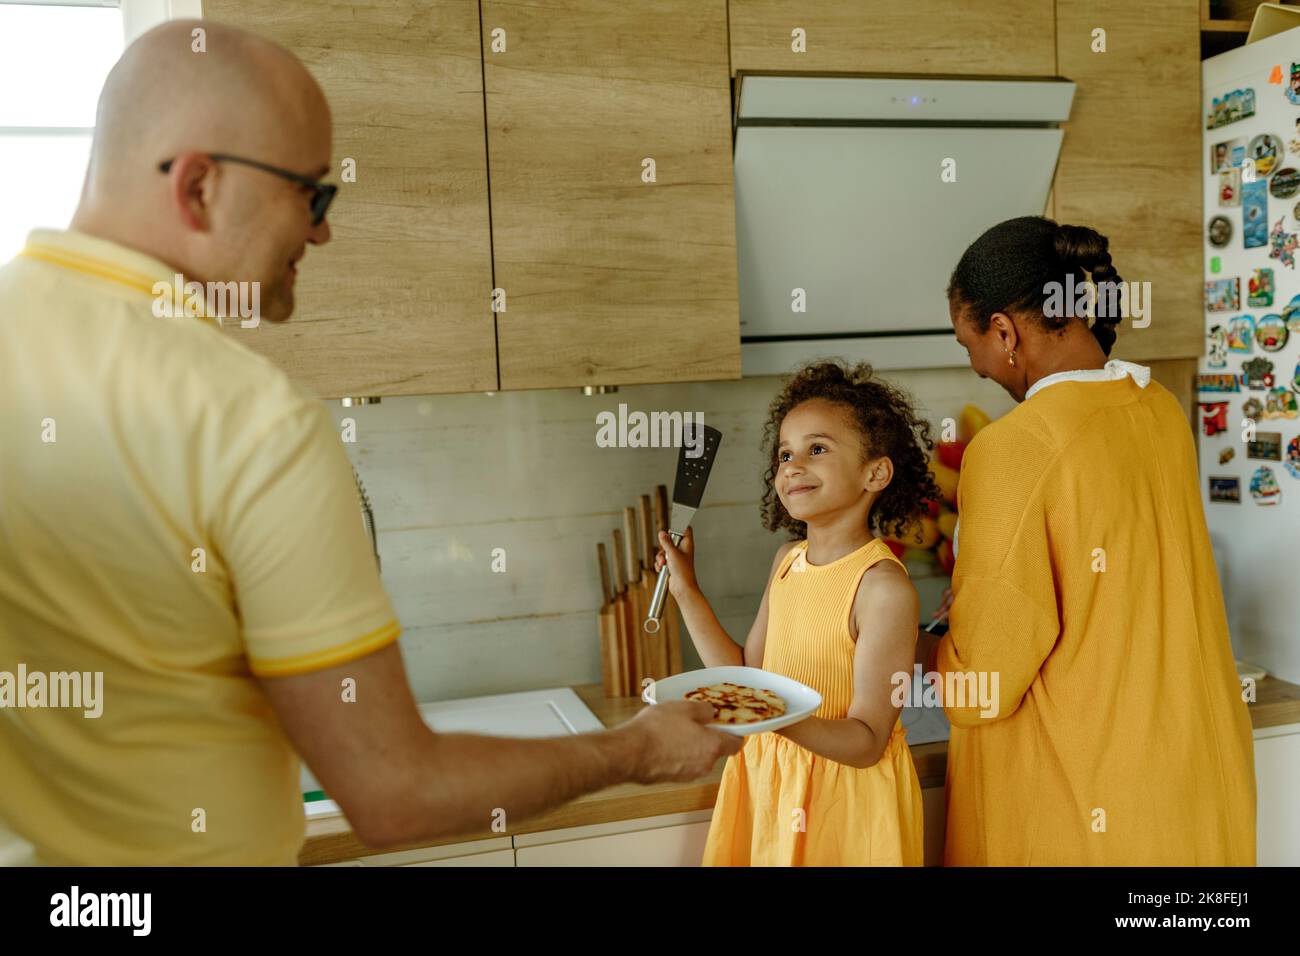 Fille souriante donnant une assiette au père debout par la mère dans la cuisine Banque D'Images